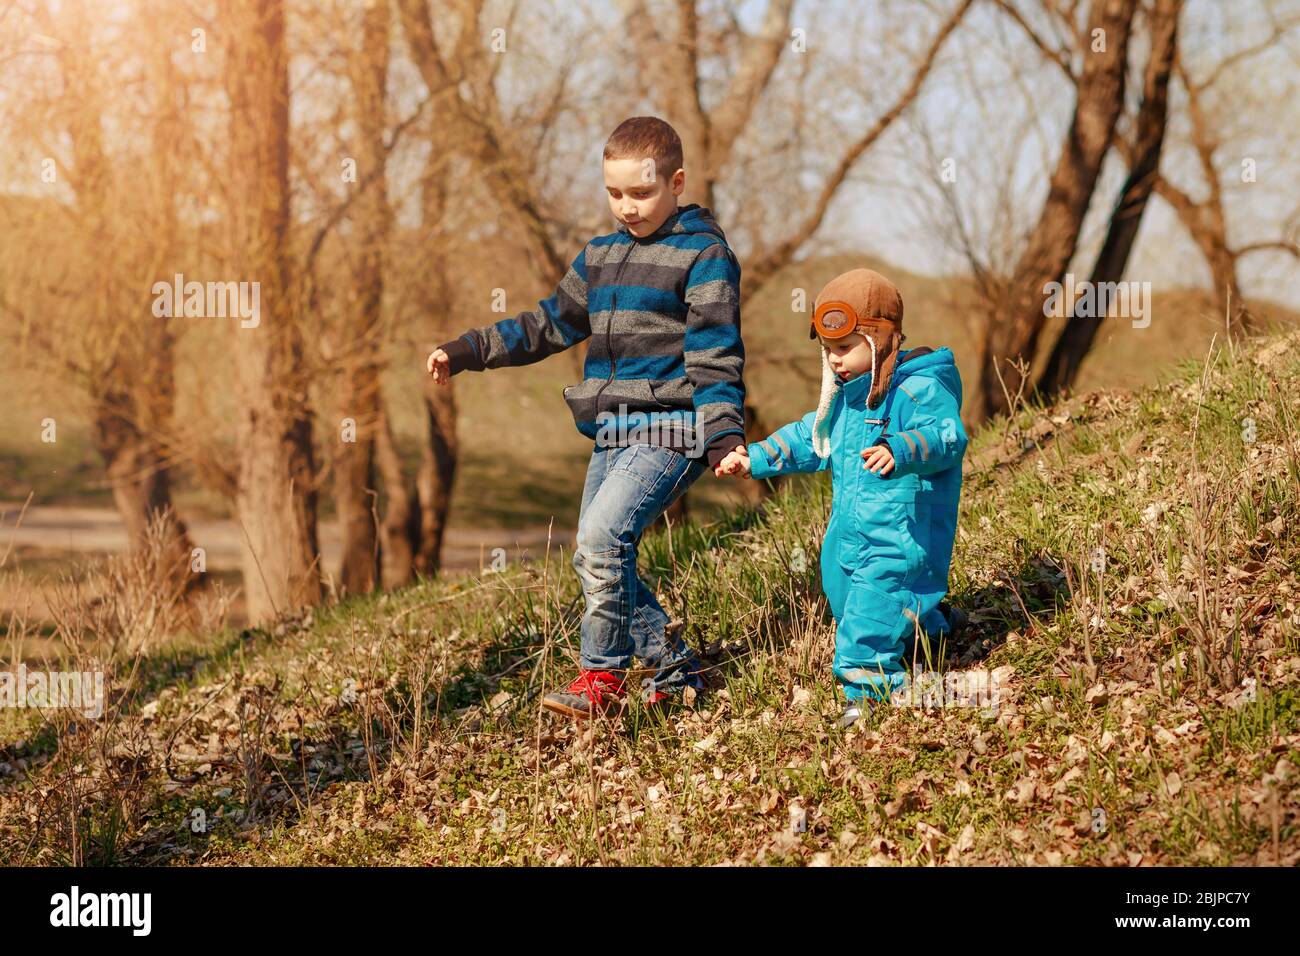 Glückliche Kinder auf dem Spaziergang im sonnigen Wald oder Park. Aktivitäten im Freien Stockfoto